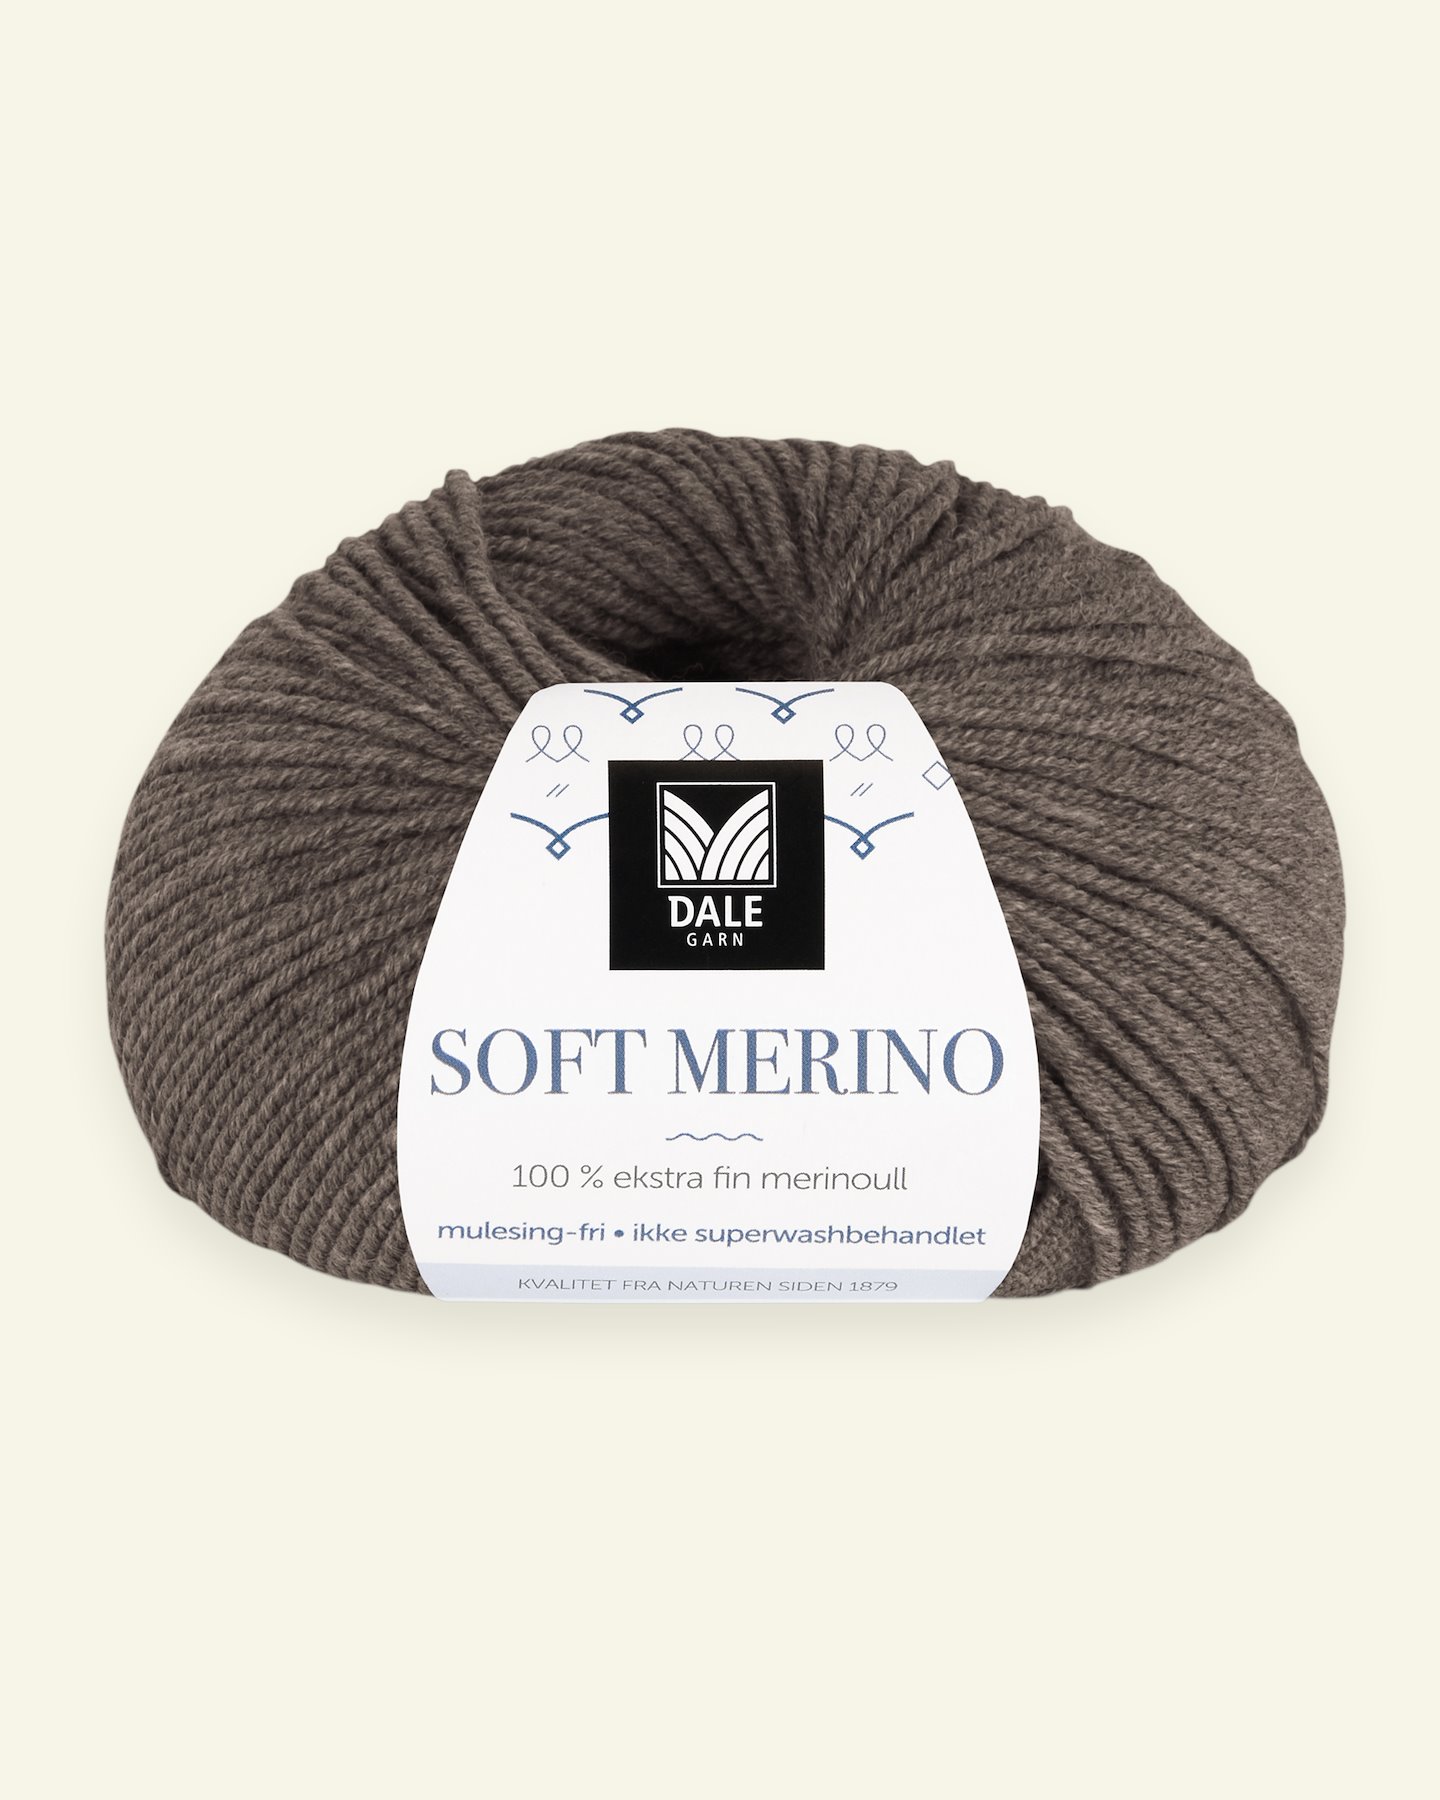 Dale Garn, 100% ekstra fint merinogarn "Soft Merino", Brun melert (3025) 90000346_pack